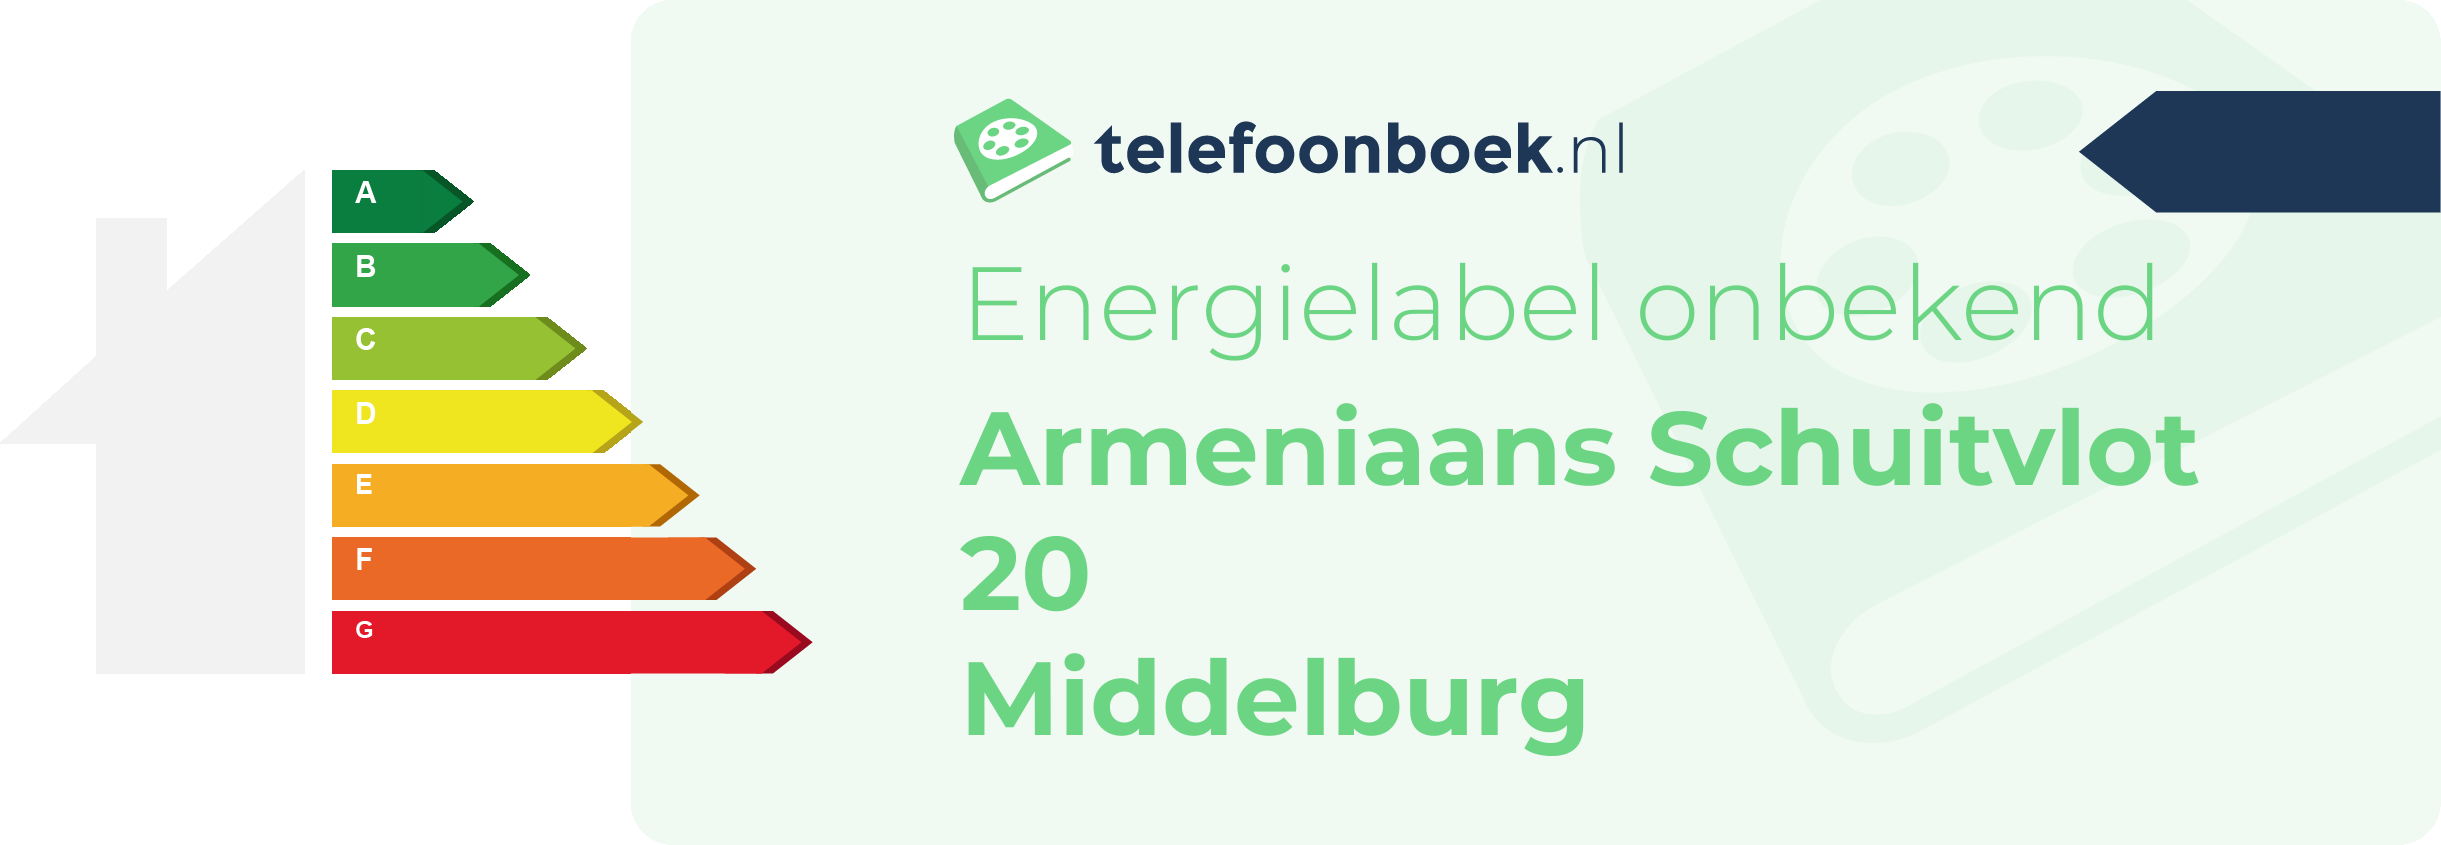 Energielabel Armeniaans Schuitvlot 20 Middelburg